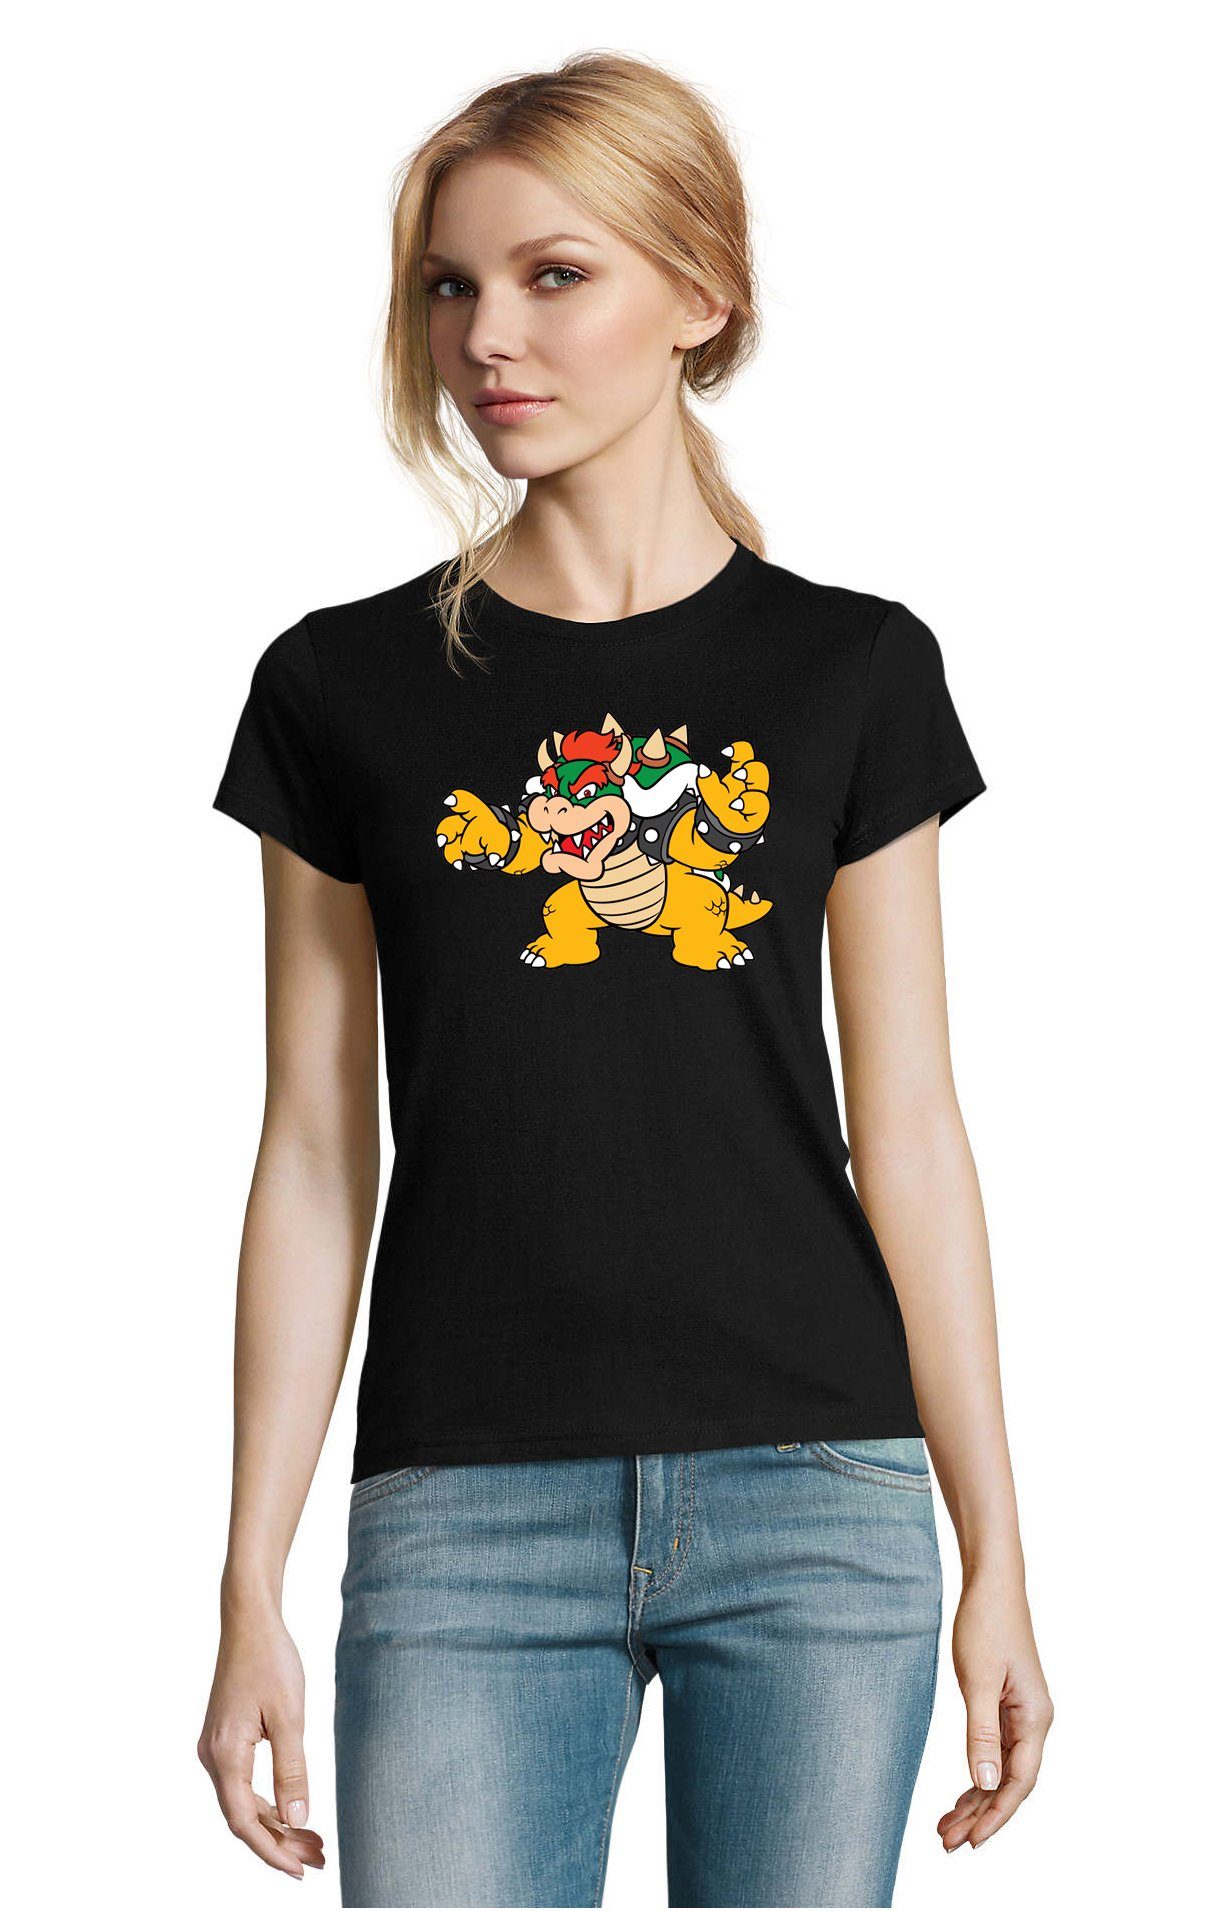 Blondie & Brownie T-Shirt Damen Bowser Game Gaming Yoshi Schwarz Nintendo Konsole Mario Gamer Luigi